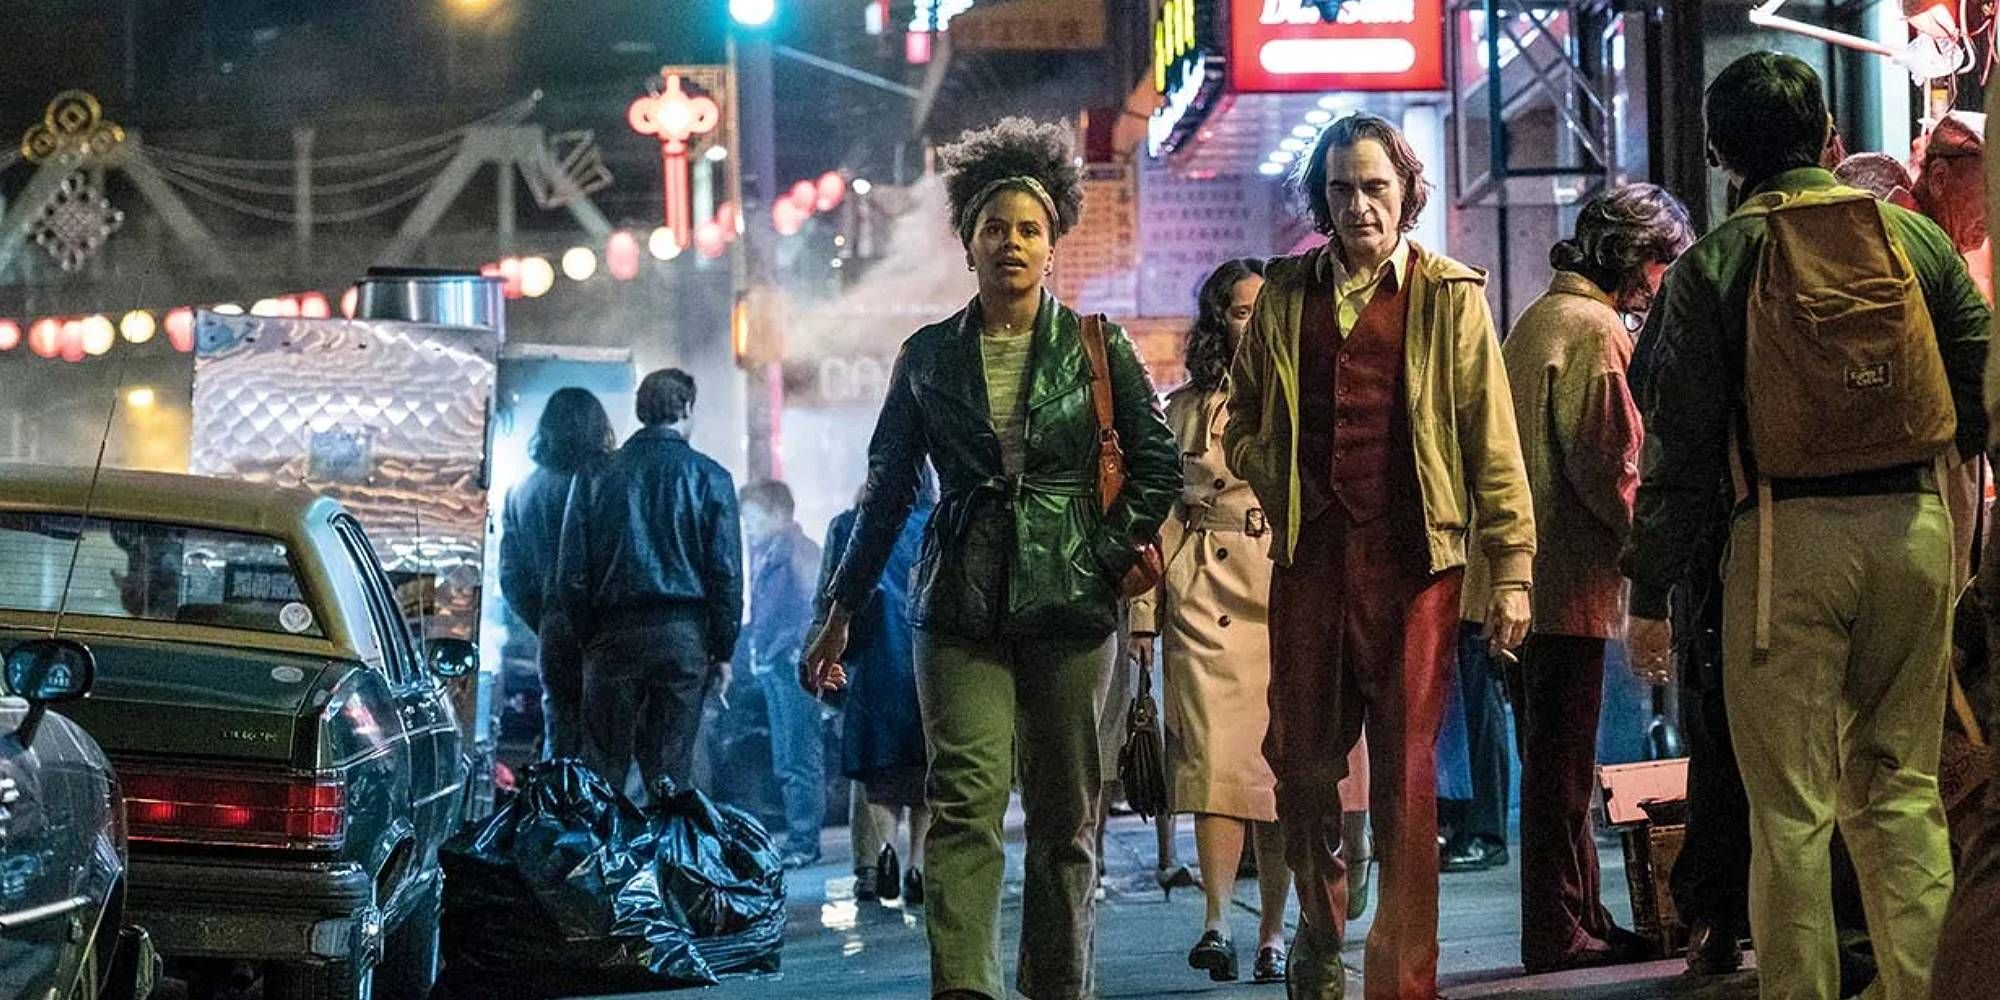 Zazie Beetz and Joaquin Phoenix walking side by side on the street in Joker.